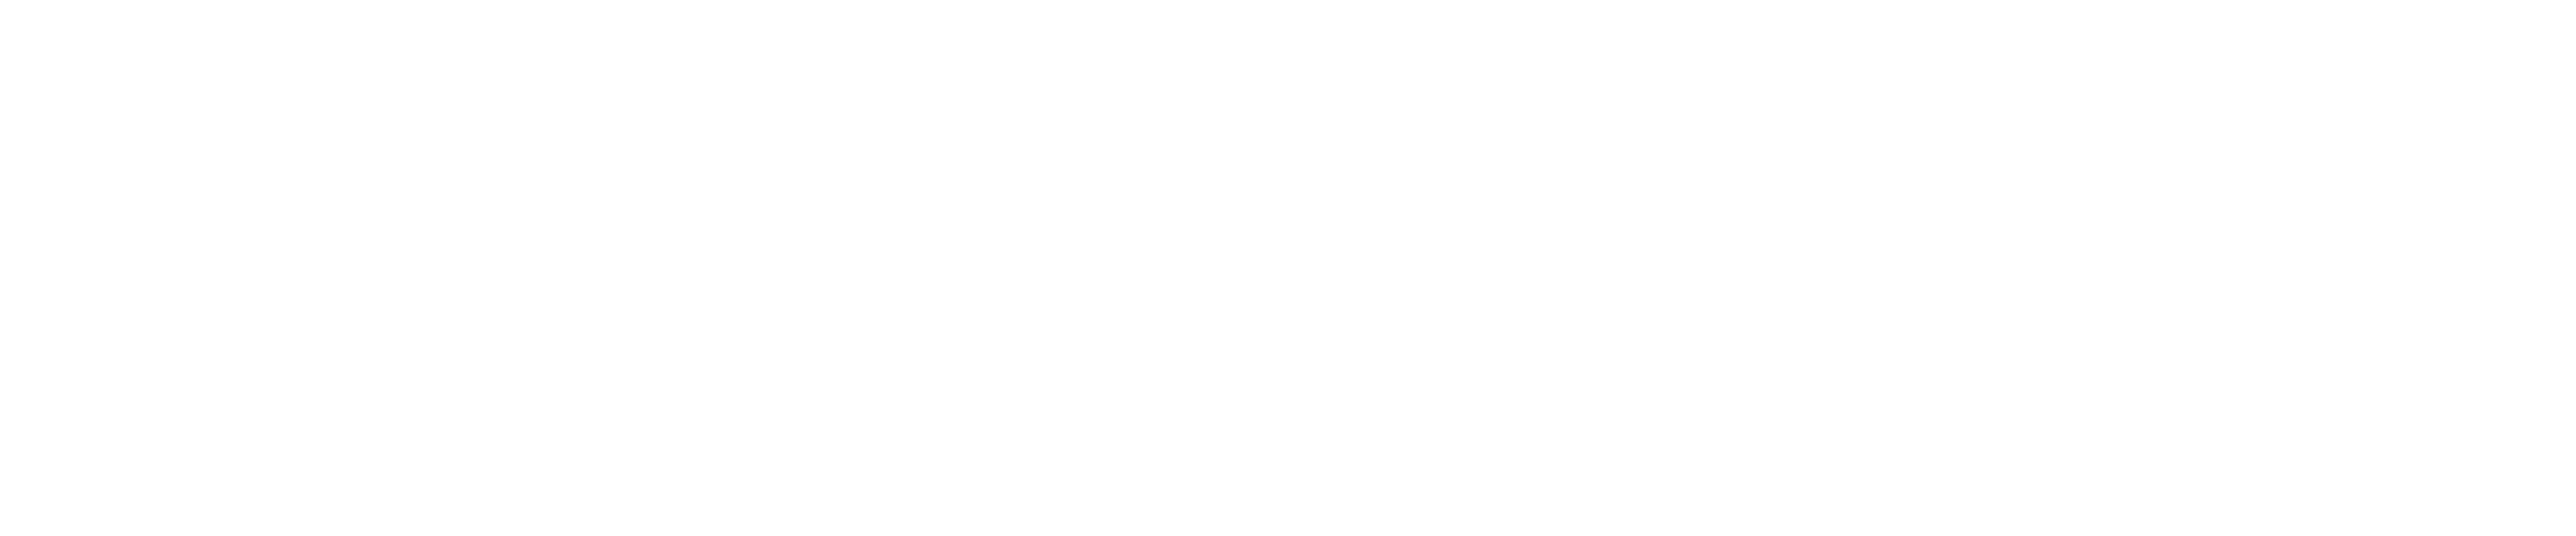 ConvaTec-logo Neg. SVG file for WorkZone